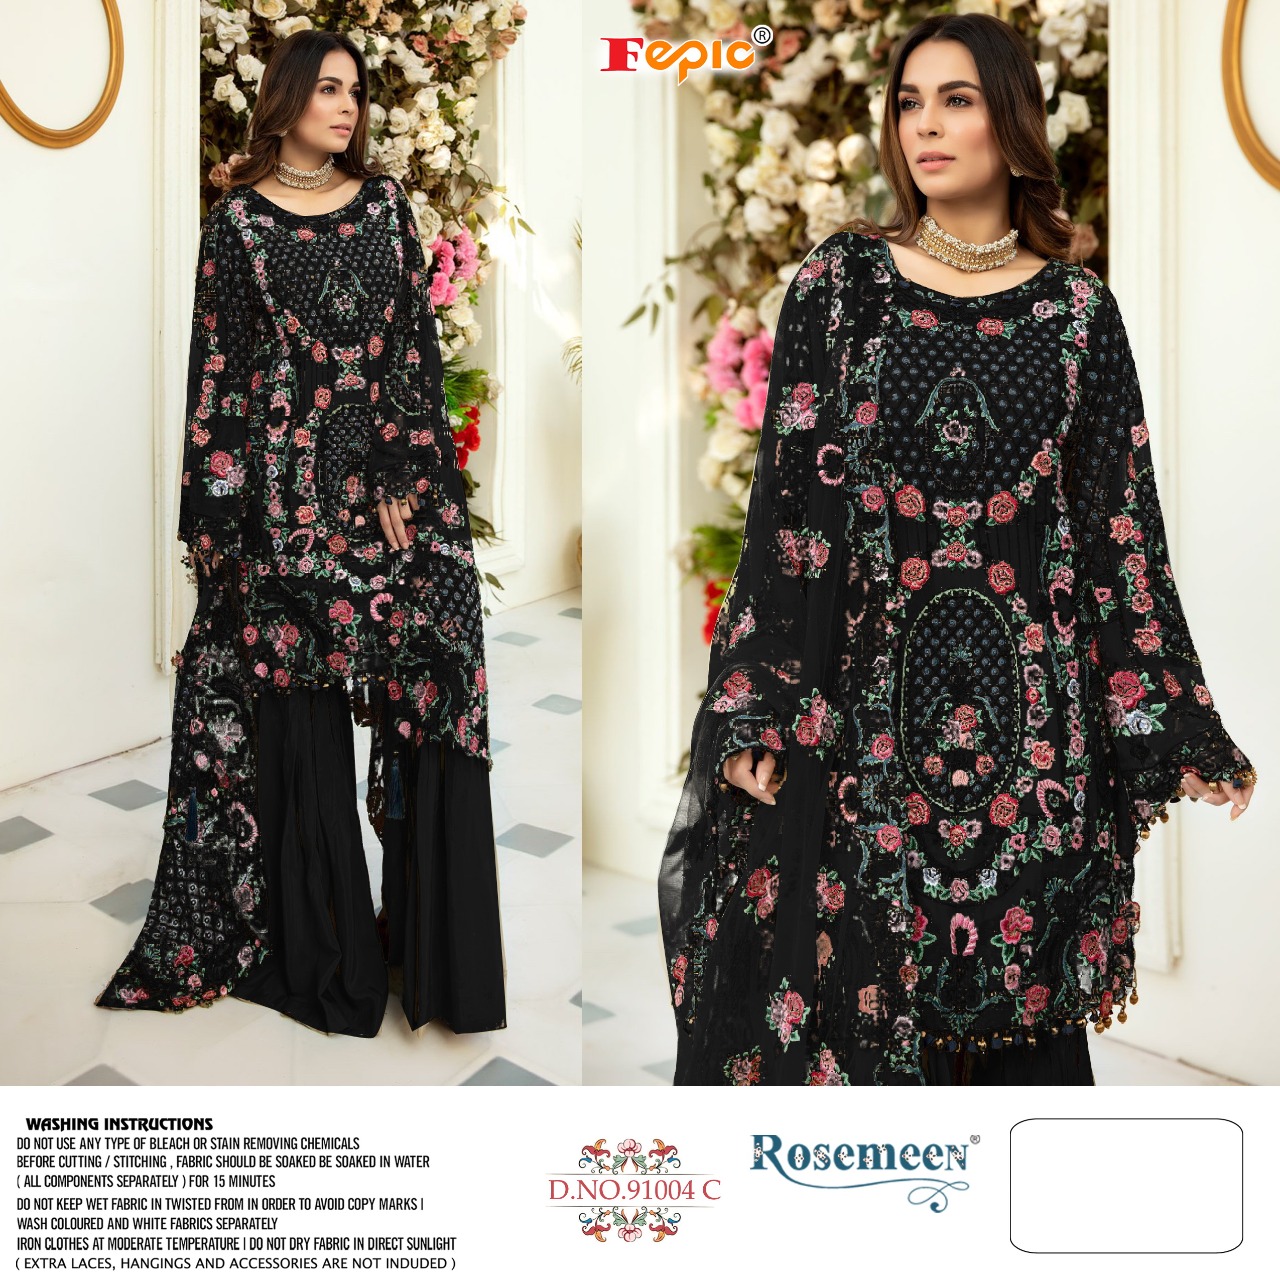 Fepic Rosemeen 91004 C Exclusive Heavy Embroidered Salwar Kameez